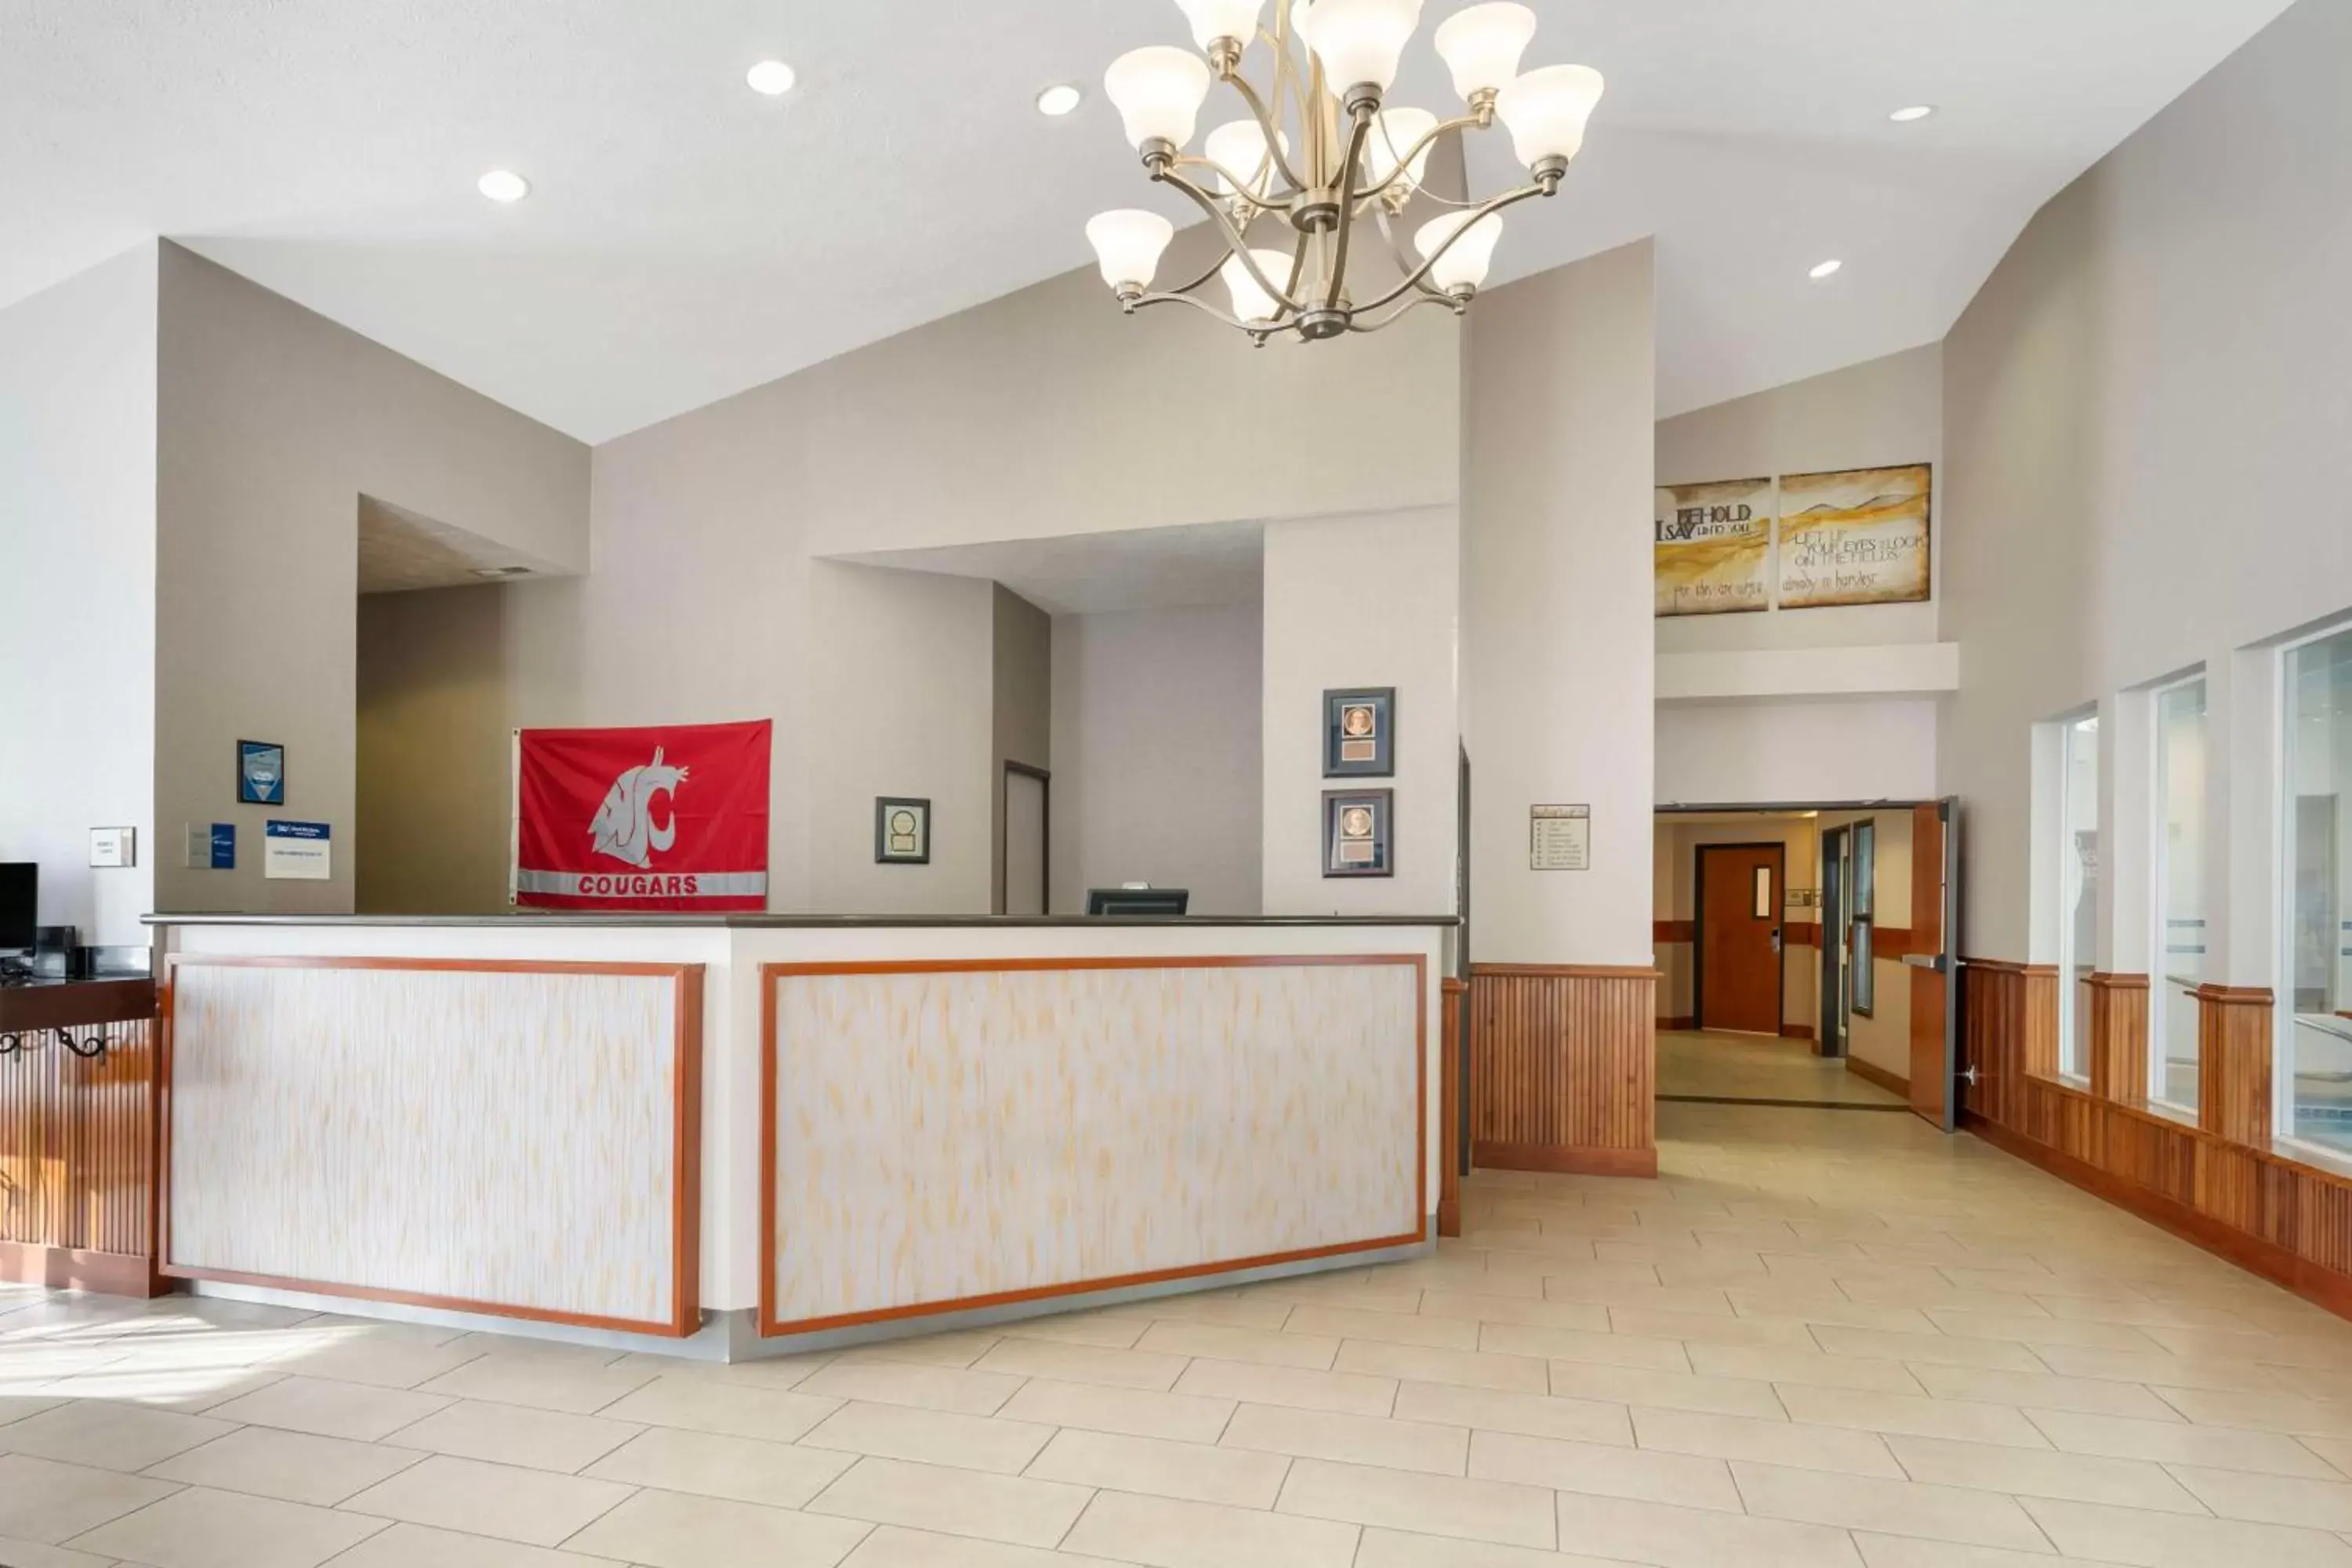 Lobby or reception, Lobby/Reception in Best Western Wheatland Inn